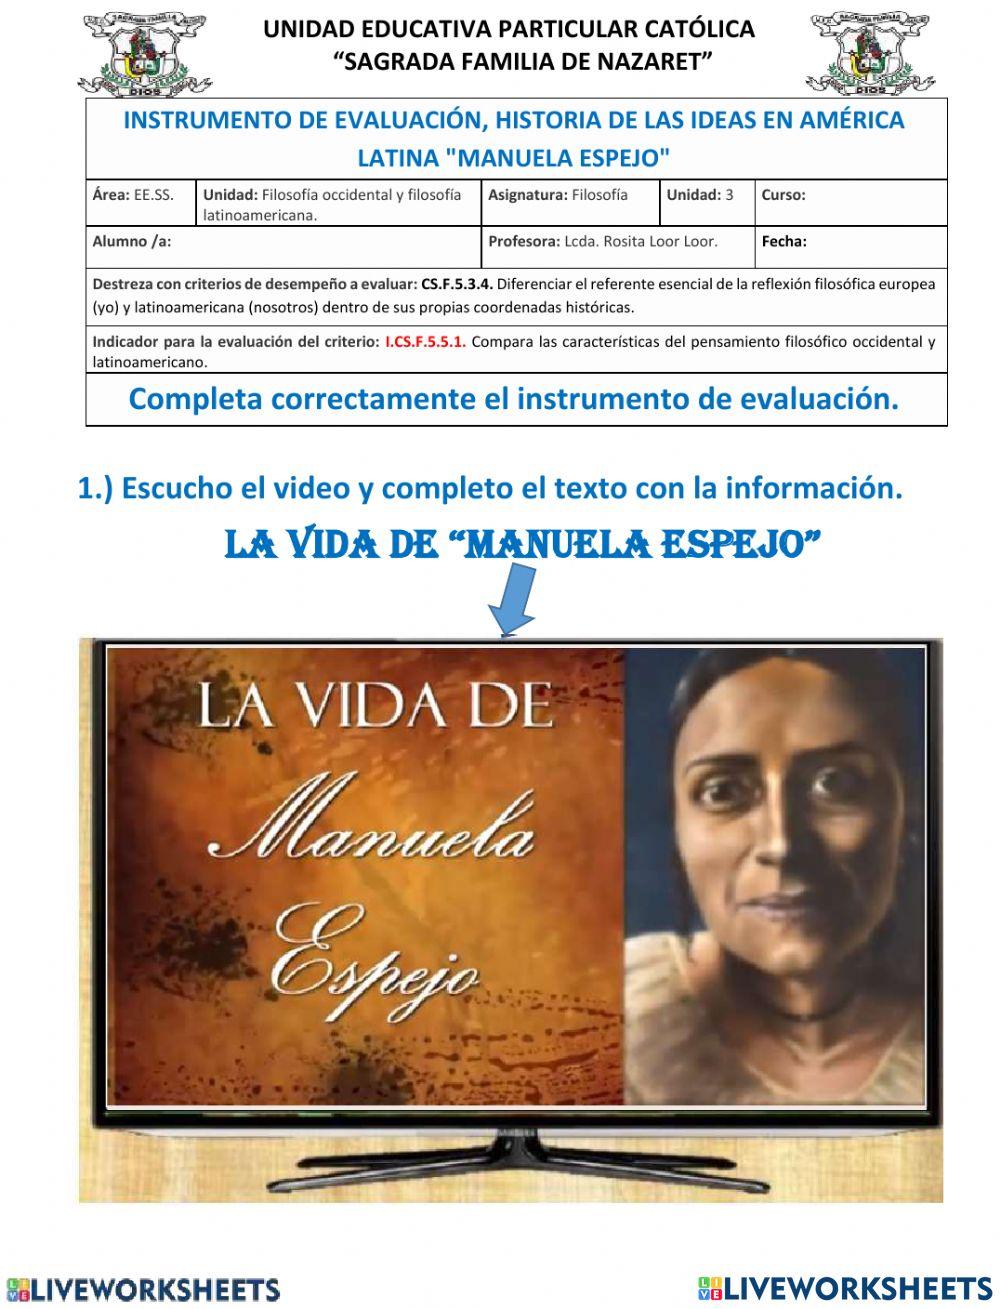 Instrumento de evaluación -Manuela Espejo-